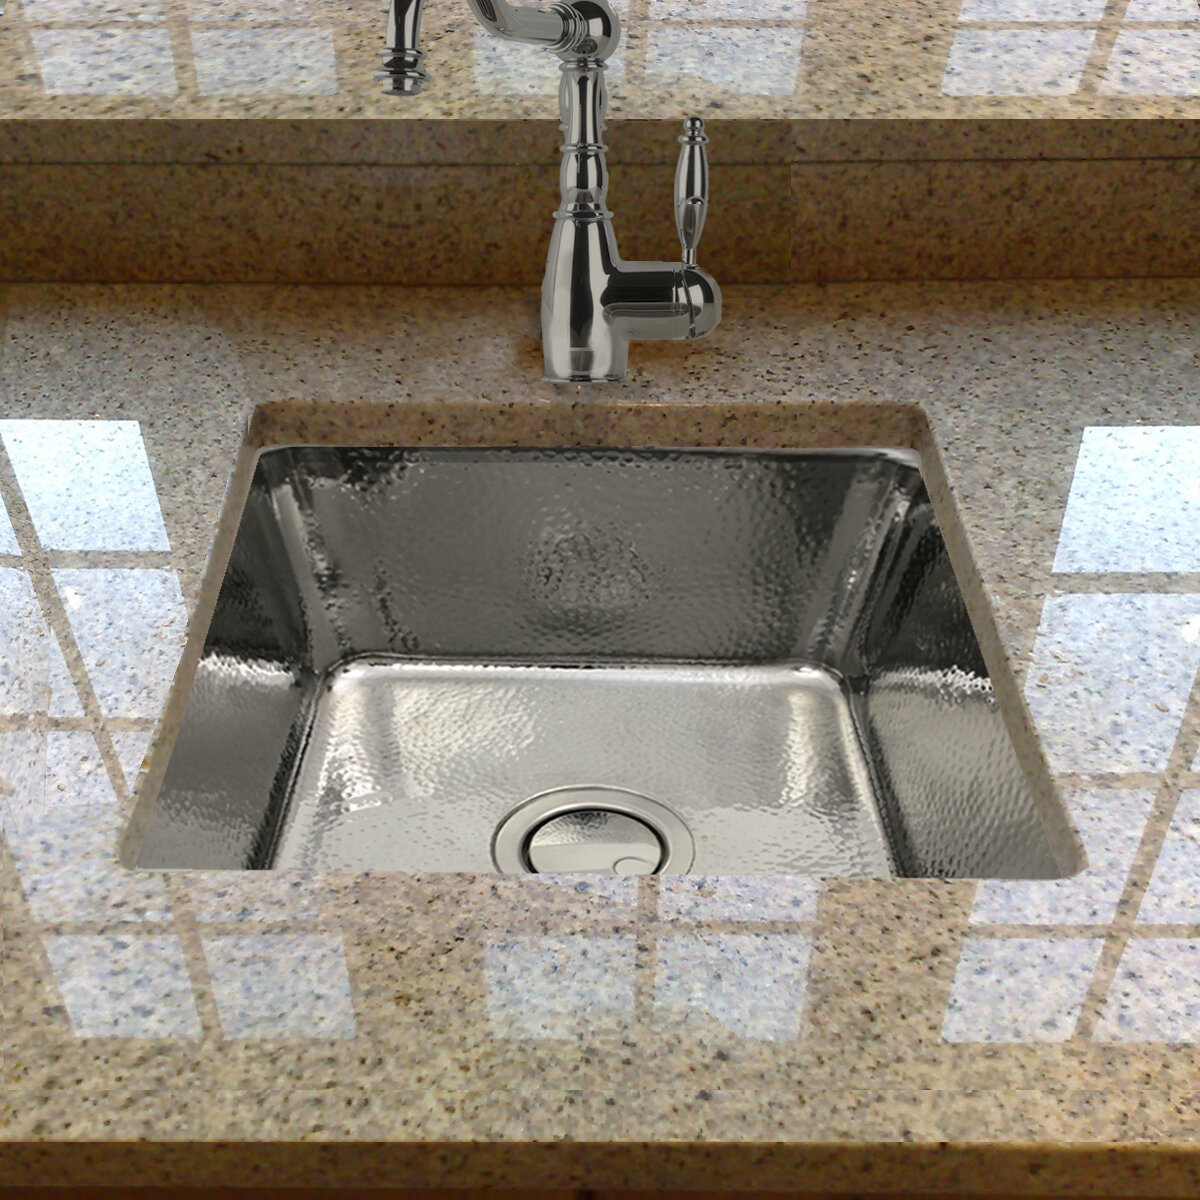 Hammered Stainless Steel Kitchen Sink - New Interior Design tout Hammered Undermount Kitchen Sink 